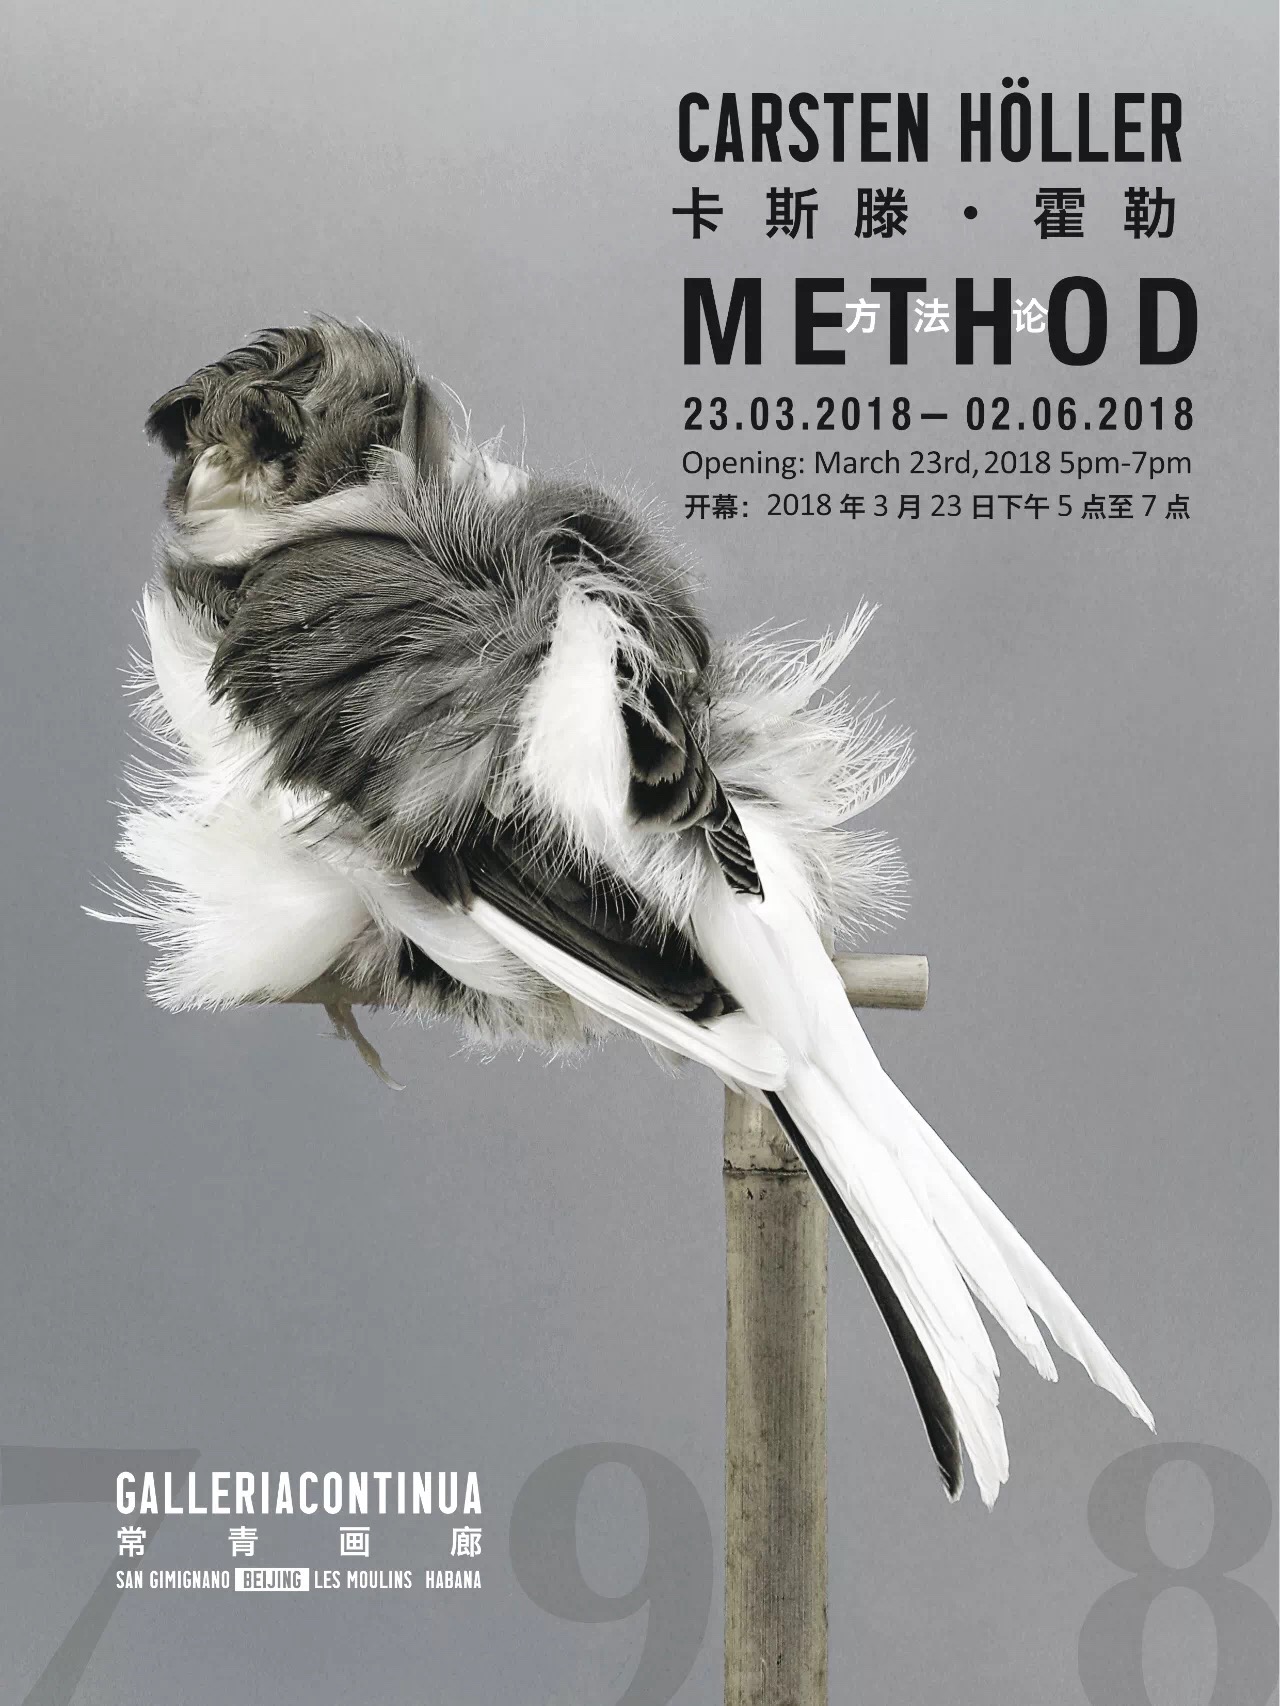 常青画廊（北京）将举办艺术家卡斯腾 · 霍勒新近作品展“方法论”